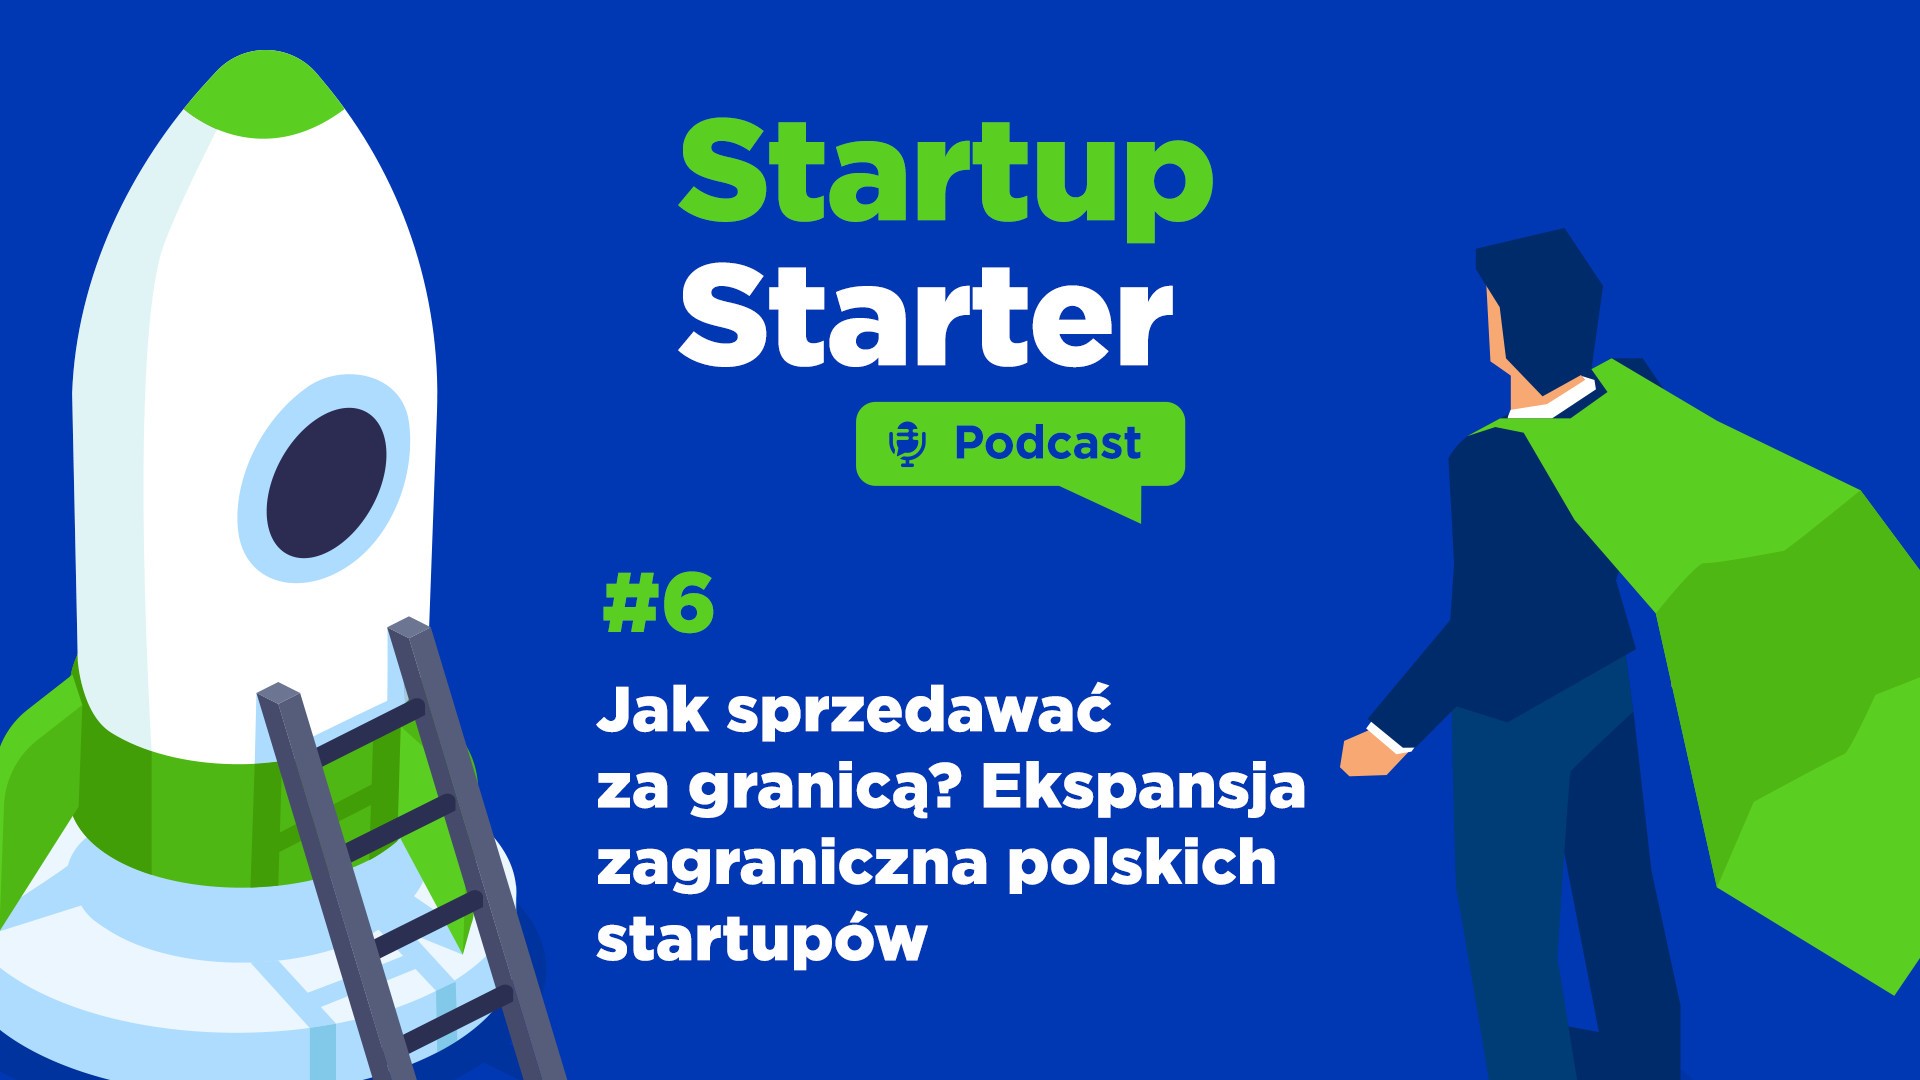 Startup Starter - Podcast #6 - Jak sprzedawać za granicą? Ekspansja zagraniczna polskich startupów